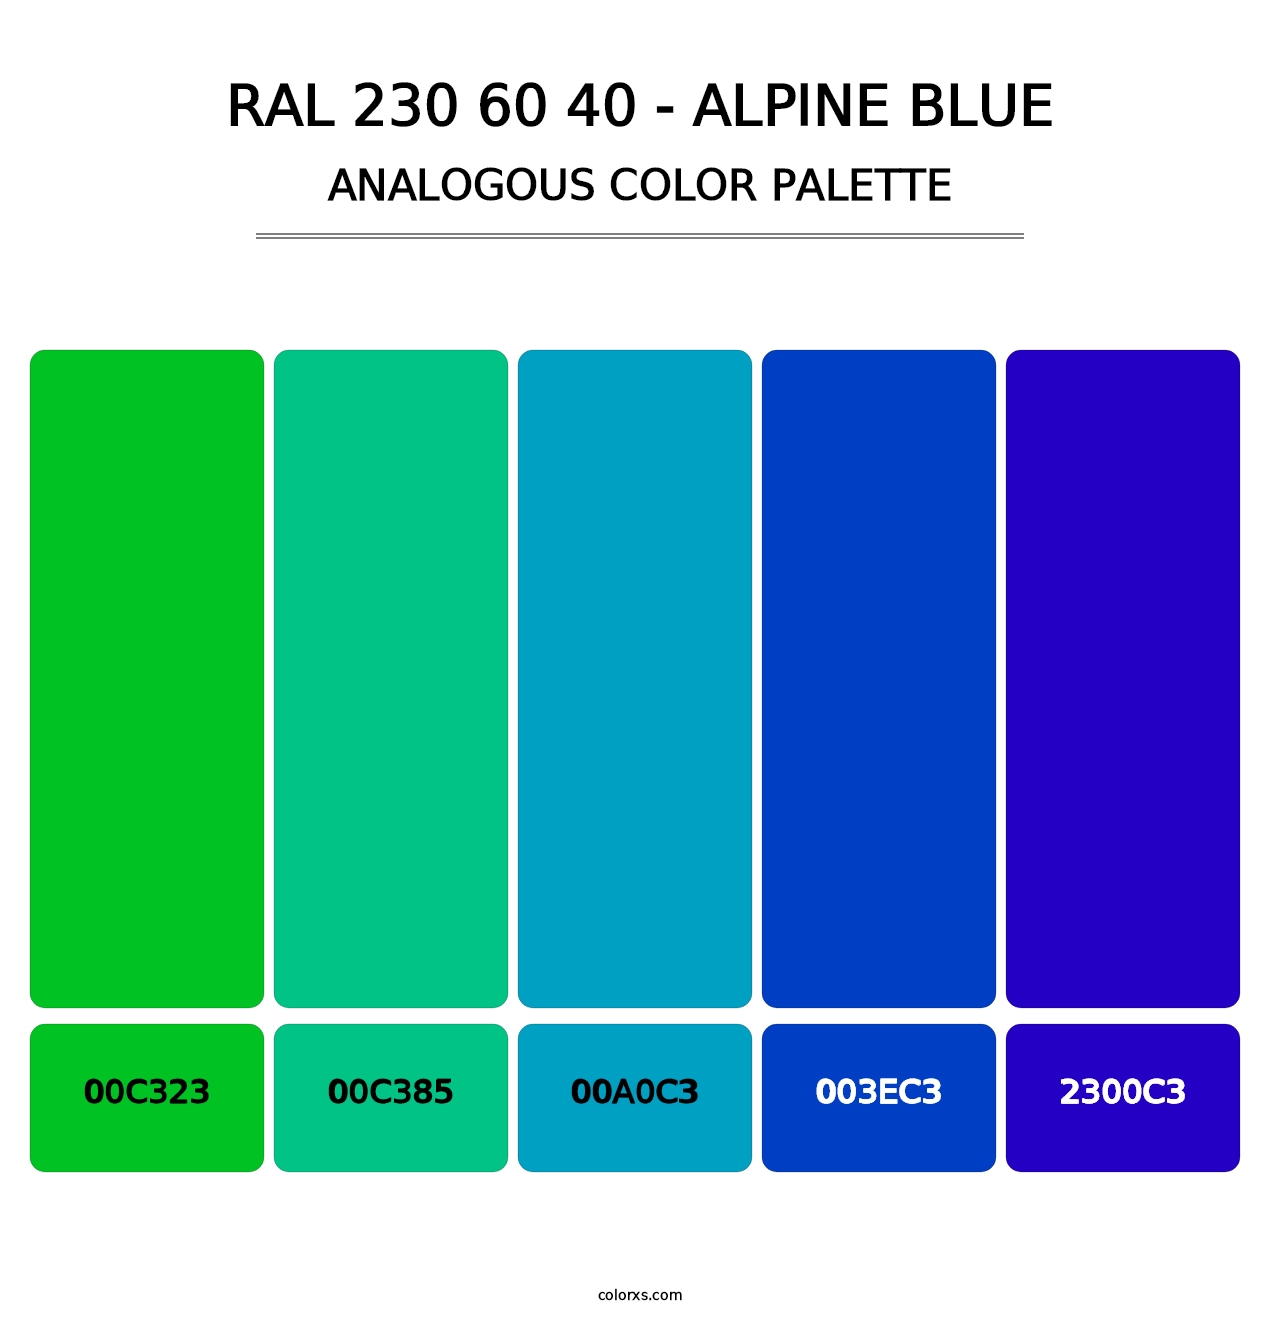 RAL 230 60 40 - Alpine Blue - Analogous Color Palette